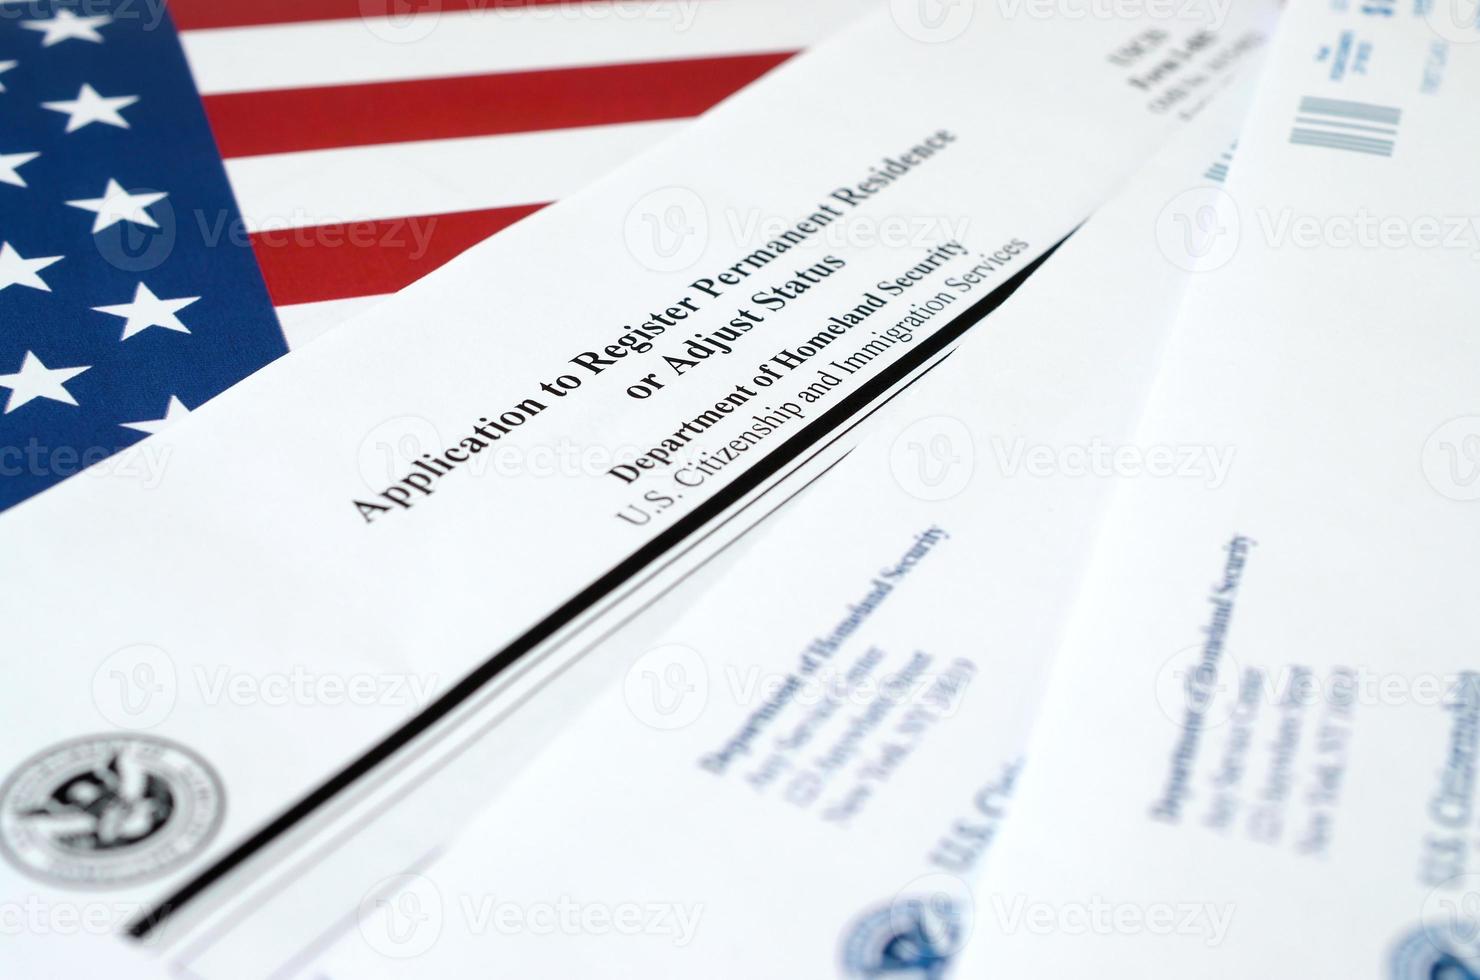 La solicitud i-485 para registrar la residencia permanente o ajustar el formulario en blanco de estado se encuentra en la bandera de los Estados Unidos con un sobre del departamento de seguridad nacional foto